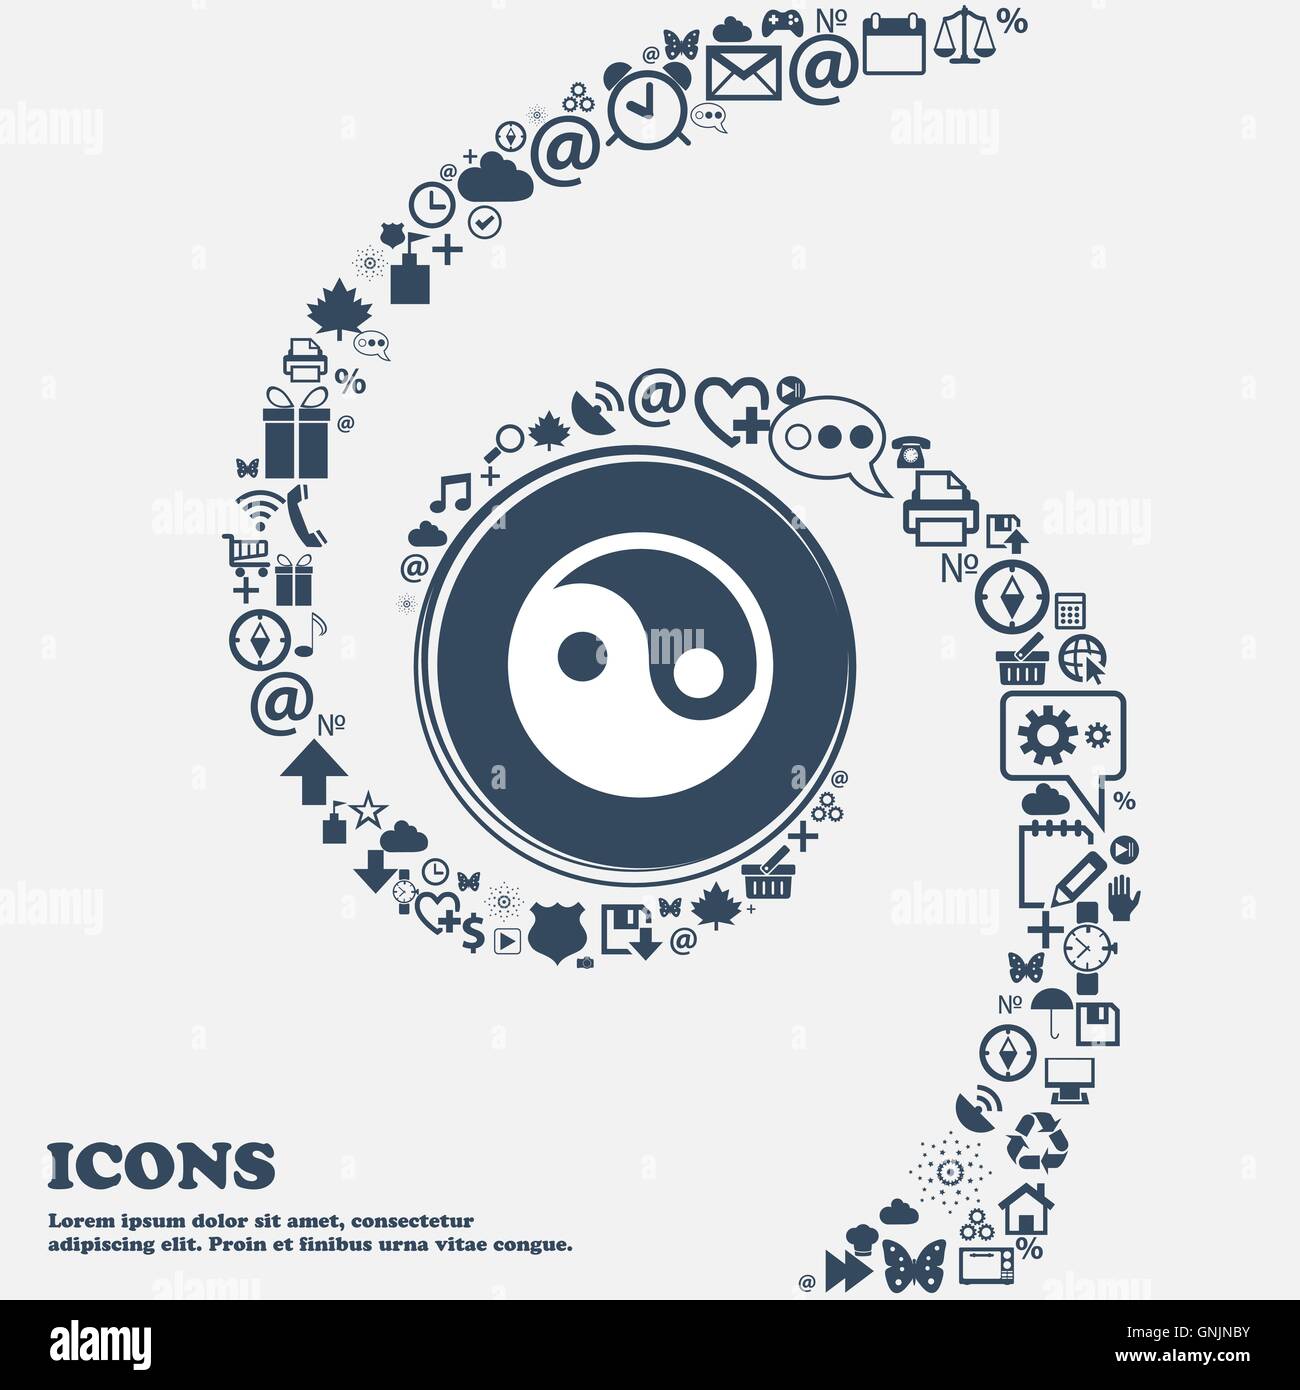 Ying Yang Se déconnecter icône dans le centre. Autour de la beaucoup de beaux symboles torsadés en spirale. Vous pouvez utiliser chacune séparément pour votre d Illustration de Vecteur